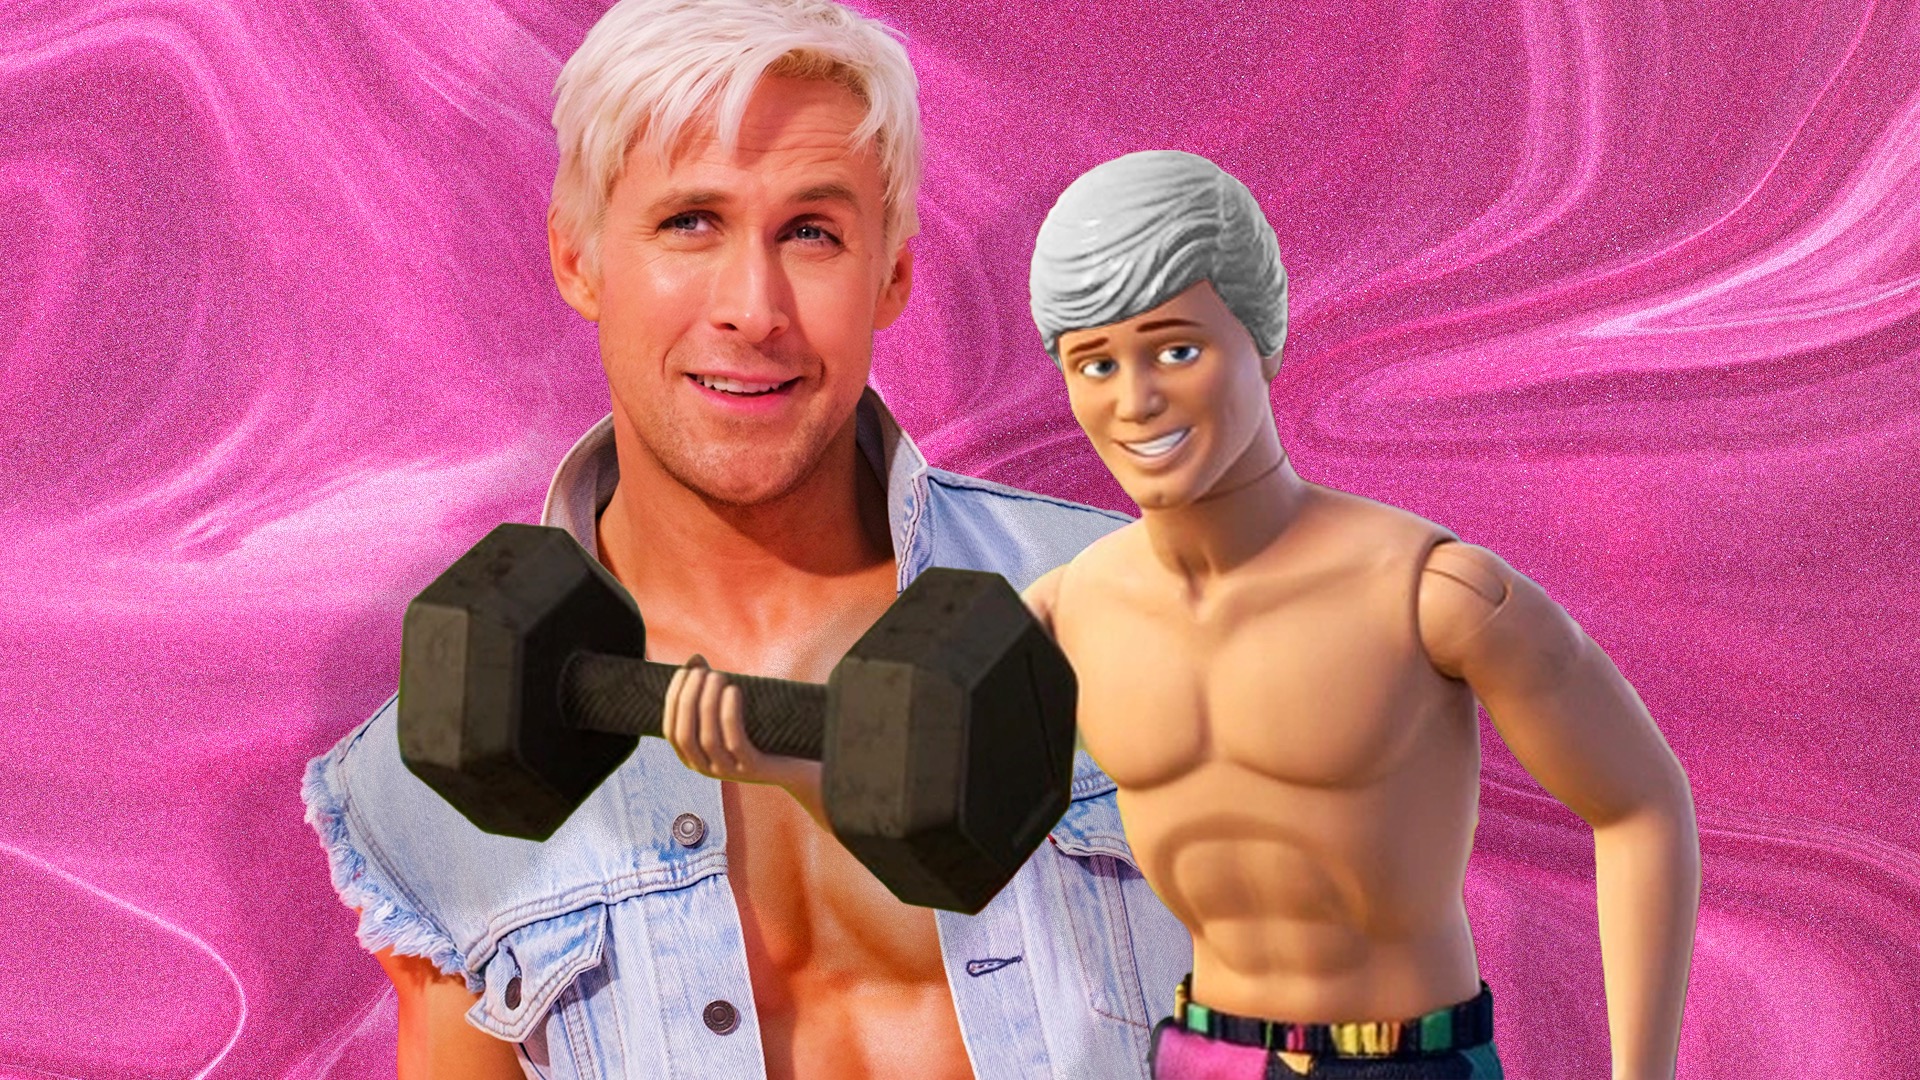 El entrenamiento para abdominales de Ryan Gosling: El secreto del six pack de Ken